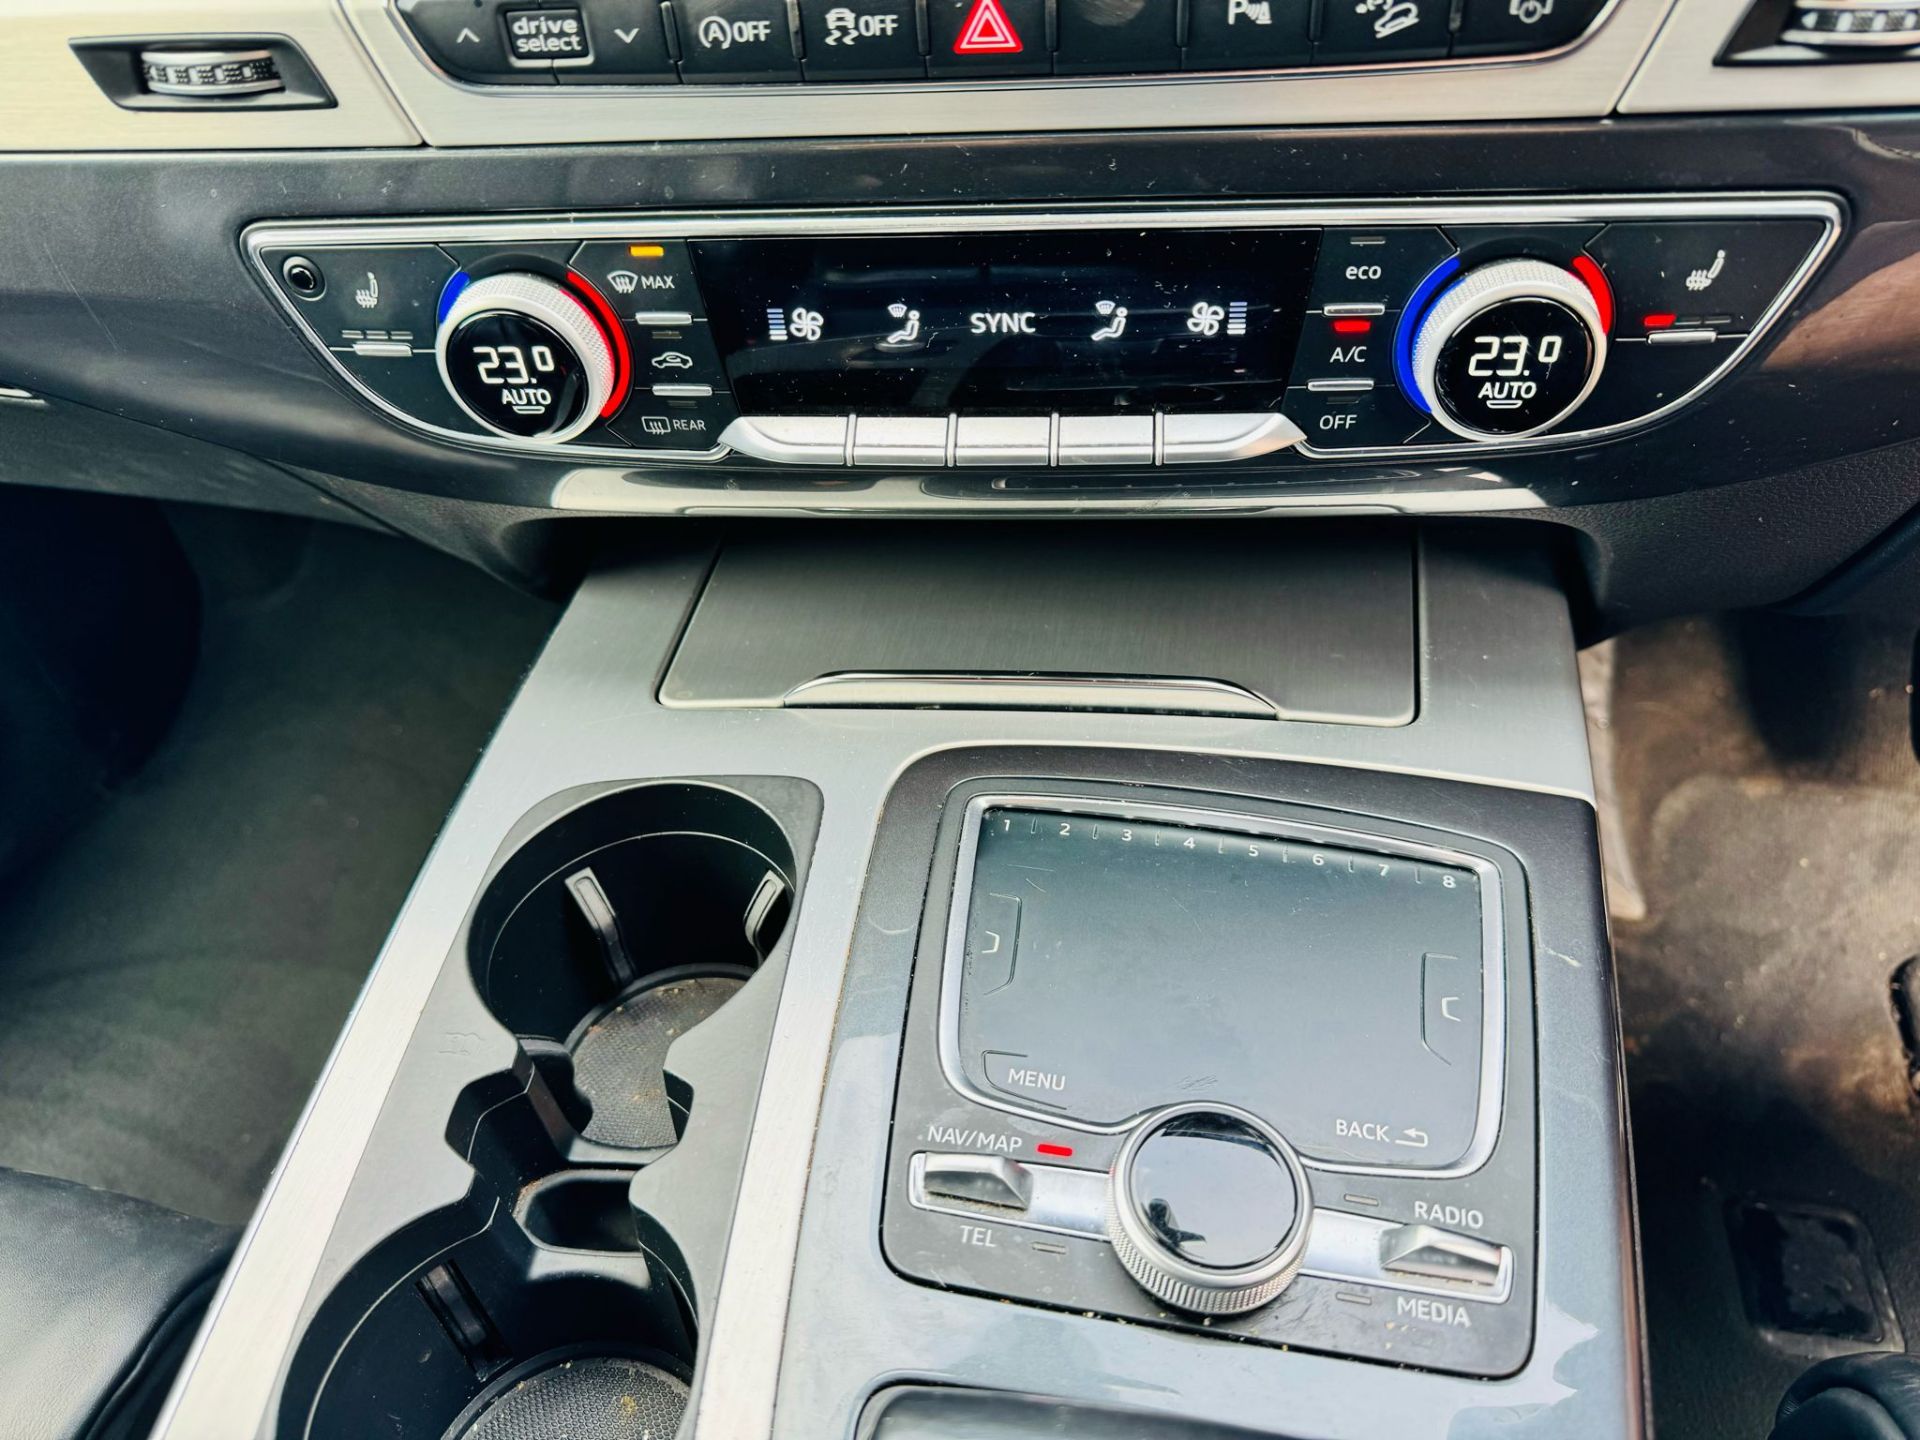 Audi SQ7 4.0TDI V8 Quattro 430BHP "SQ7 EDITION" Auto (7 Seats) 2018 18Reg -Sat Nav -Reversing camera - Image 24 of 38